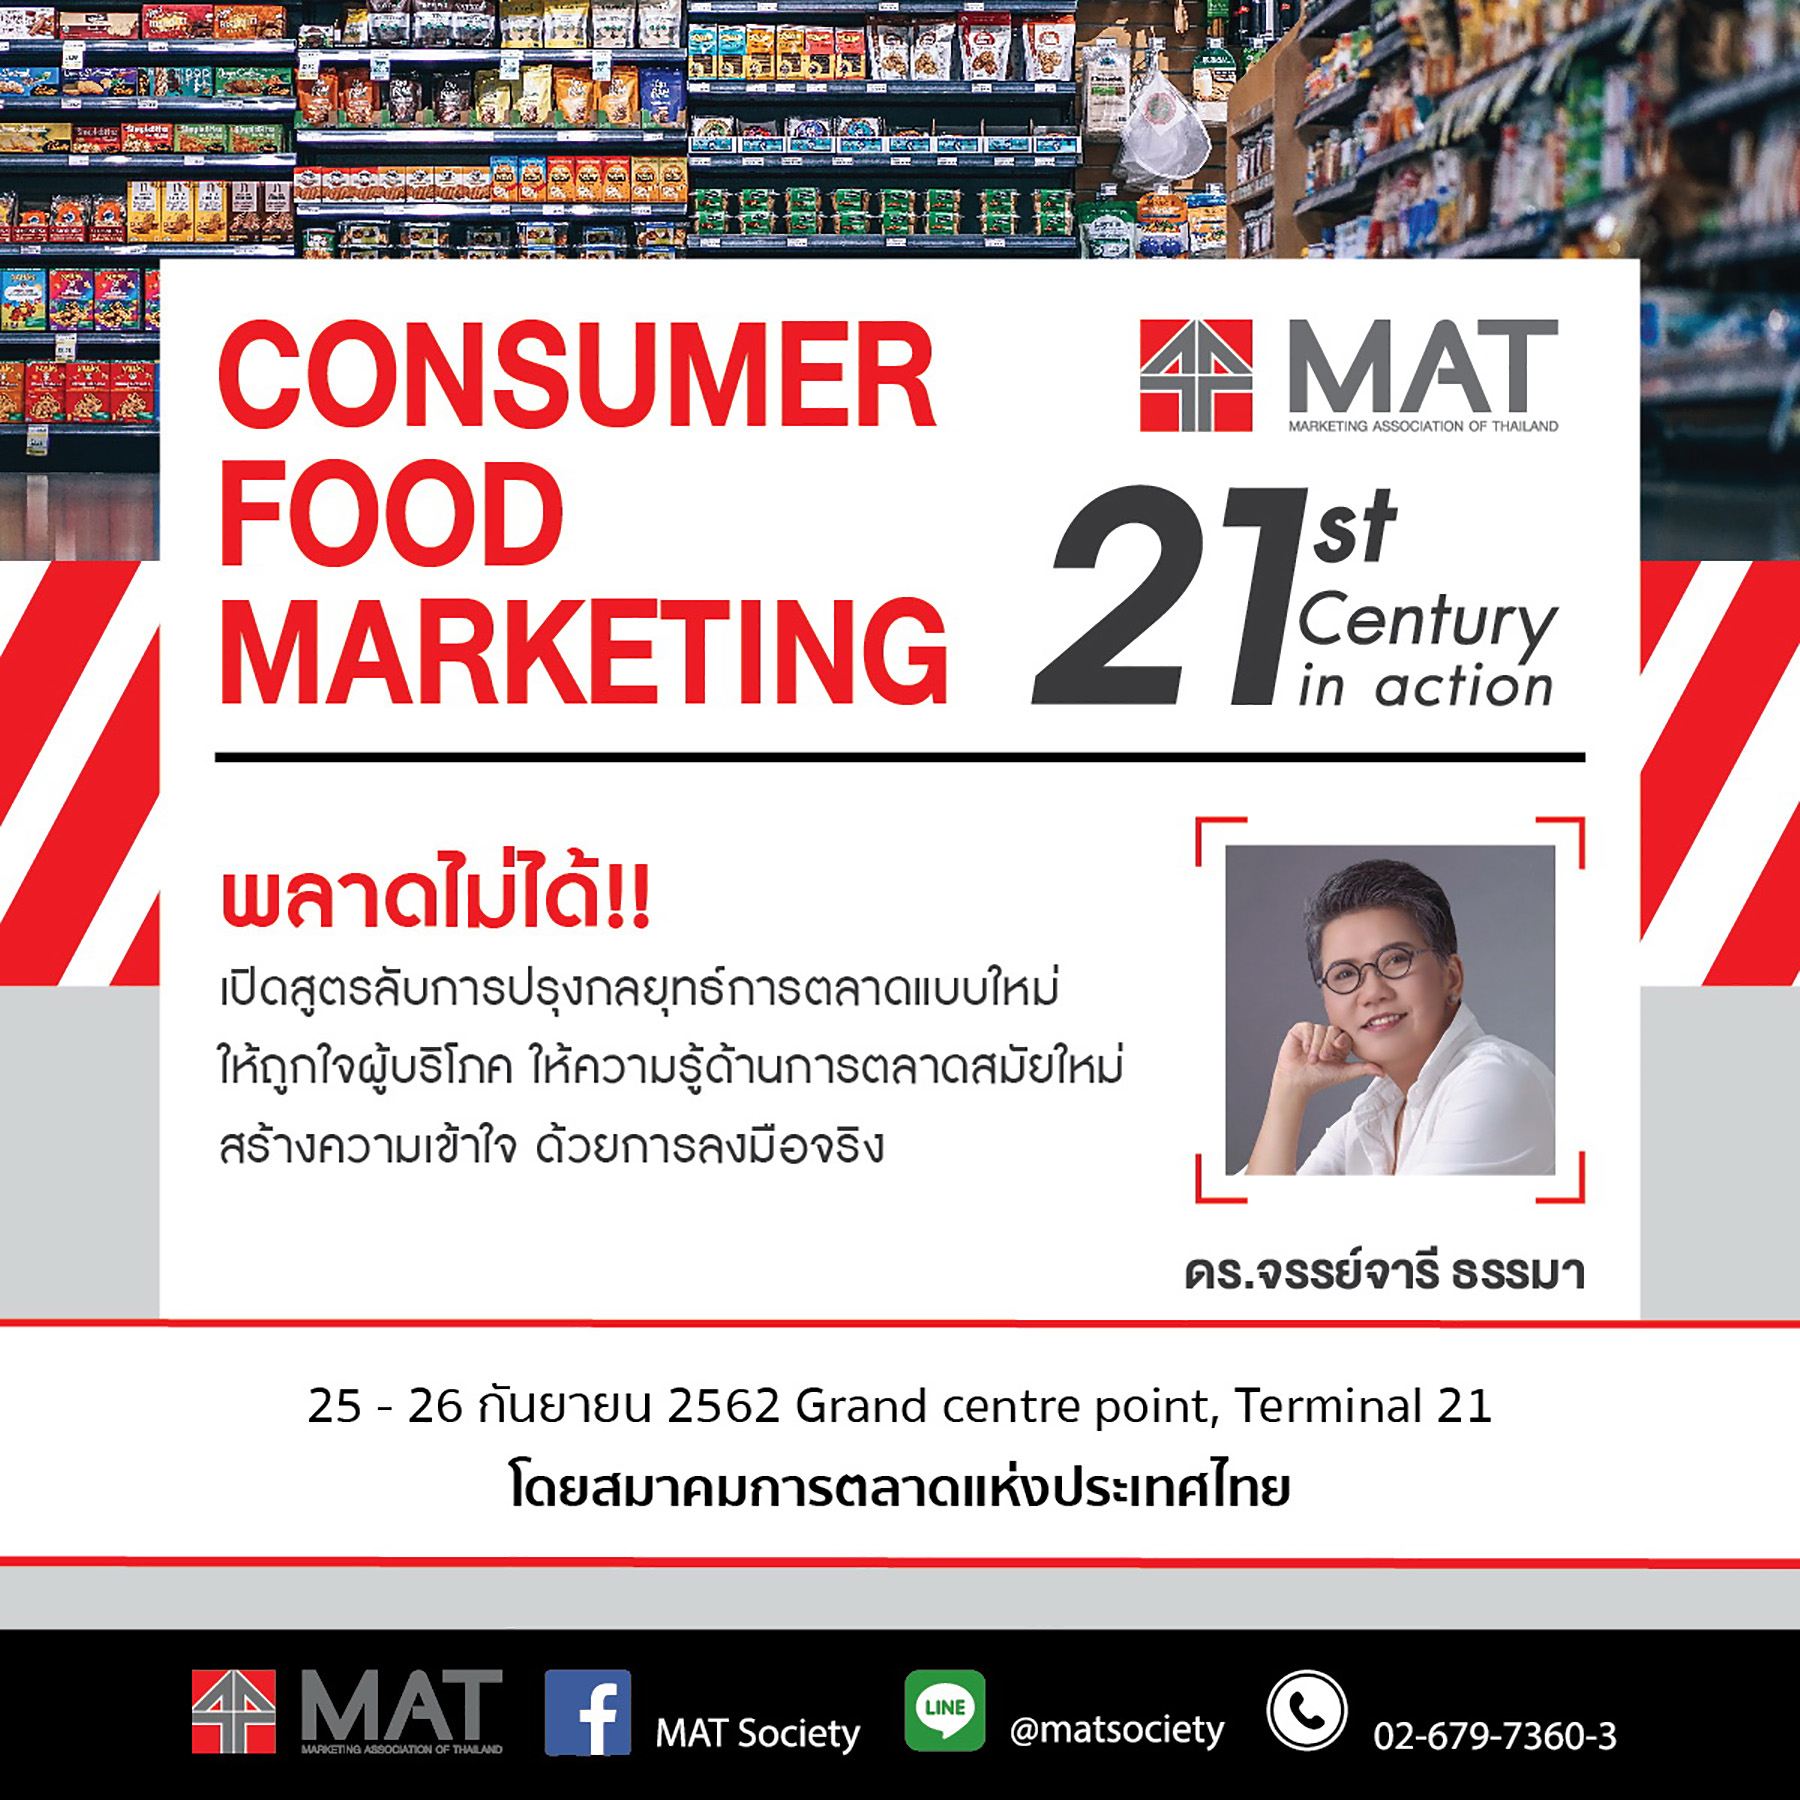 สมาคมการตลาดฯ เปิดคอร์ส Consumer Food Marketing for 21st Century – in Action